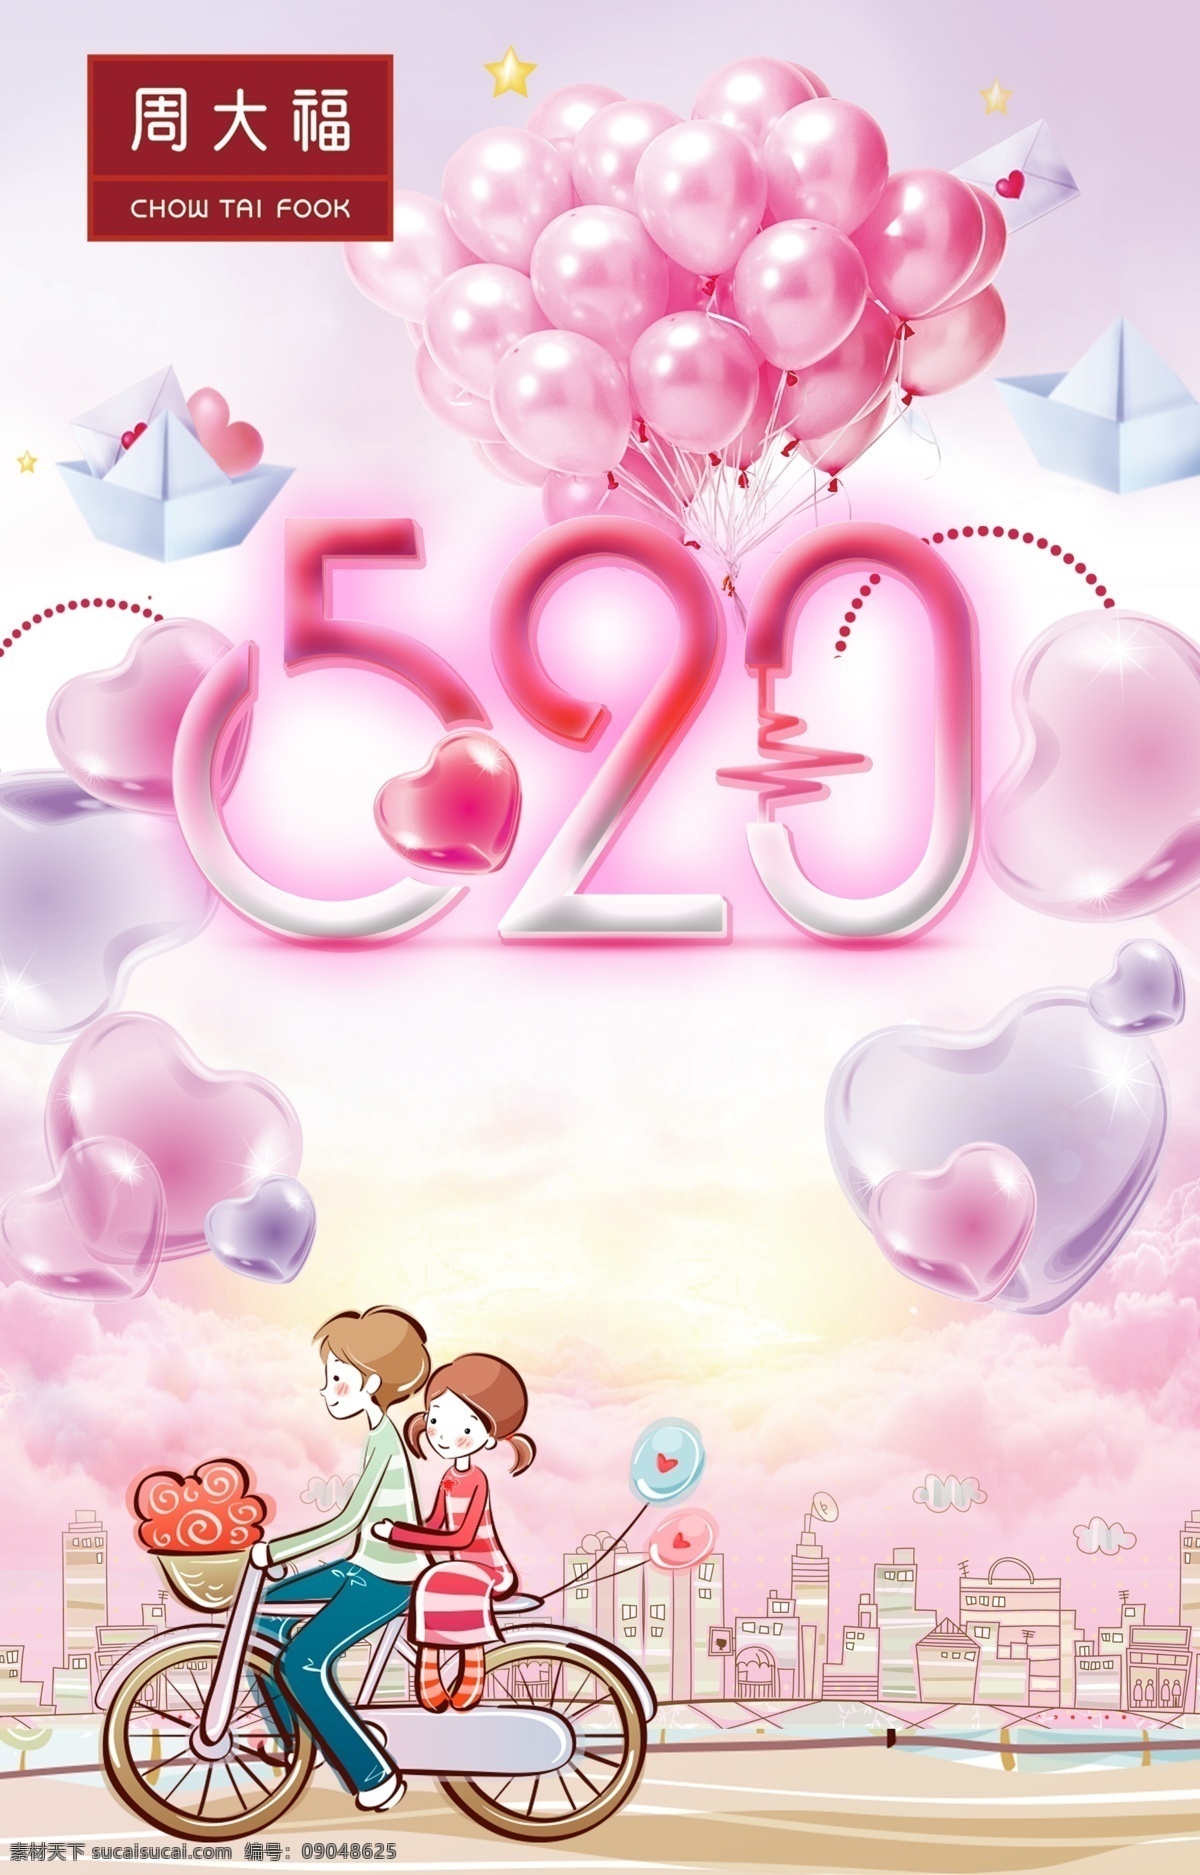 周 大福 520 海报 周大福 宣传 广告 卡通漫画 气球 浪漫 温馨 粉色 情人节